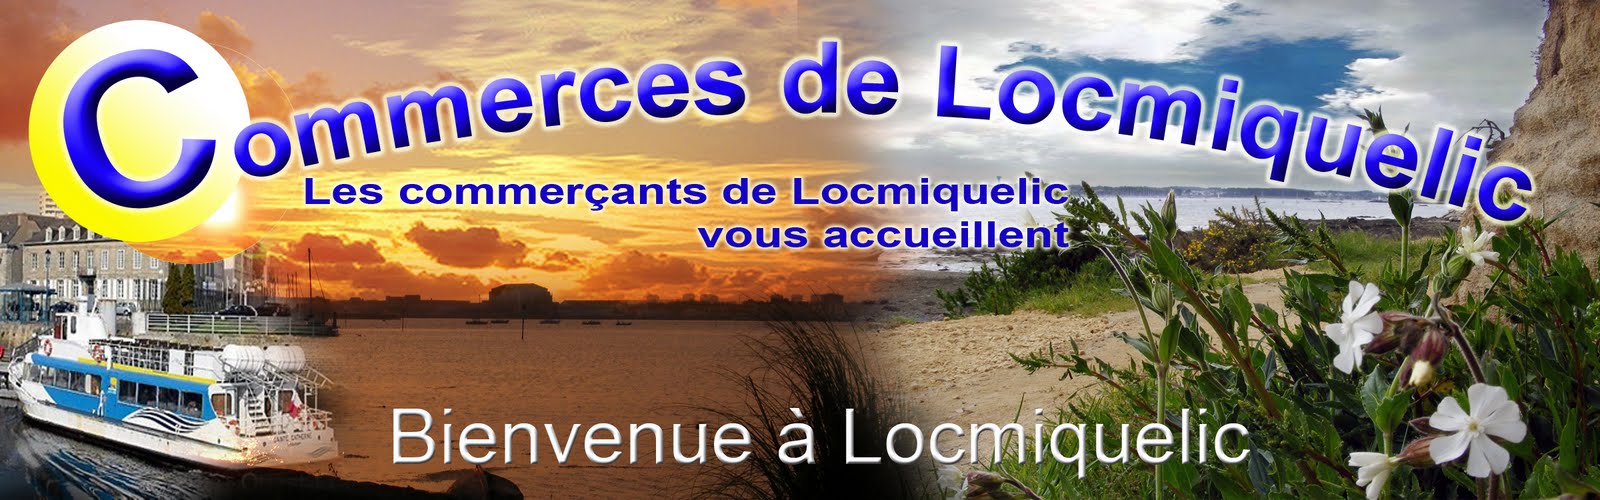 Commerces de Locmiquelic - Commerçants de Locmiquelic